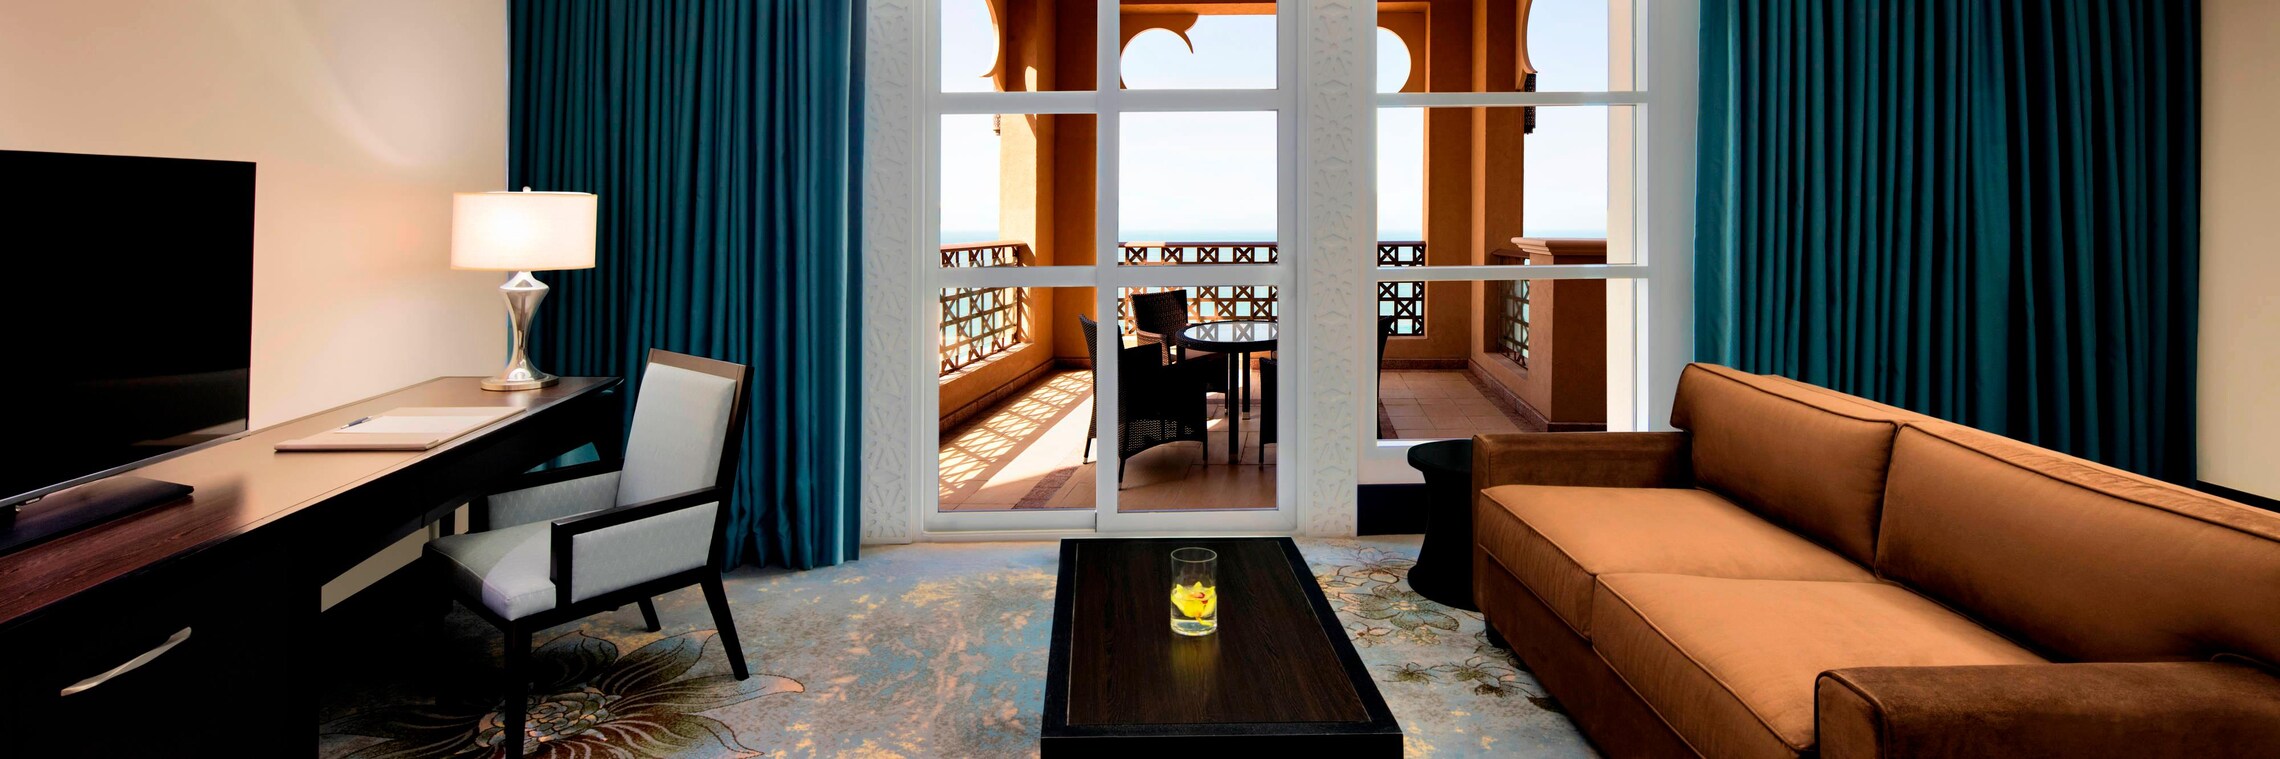 Emirati Suite - Living Room